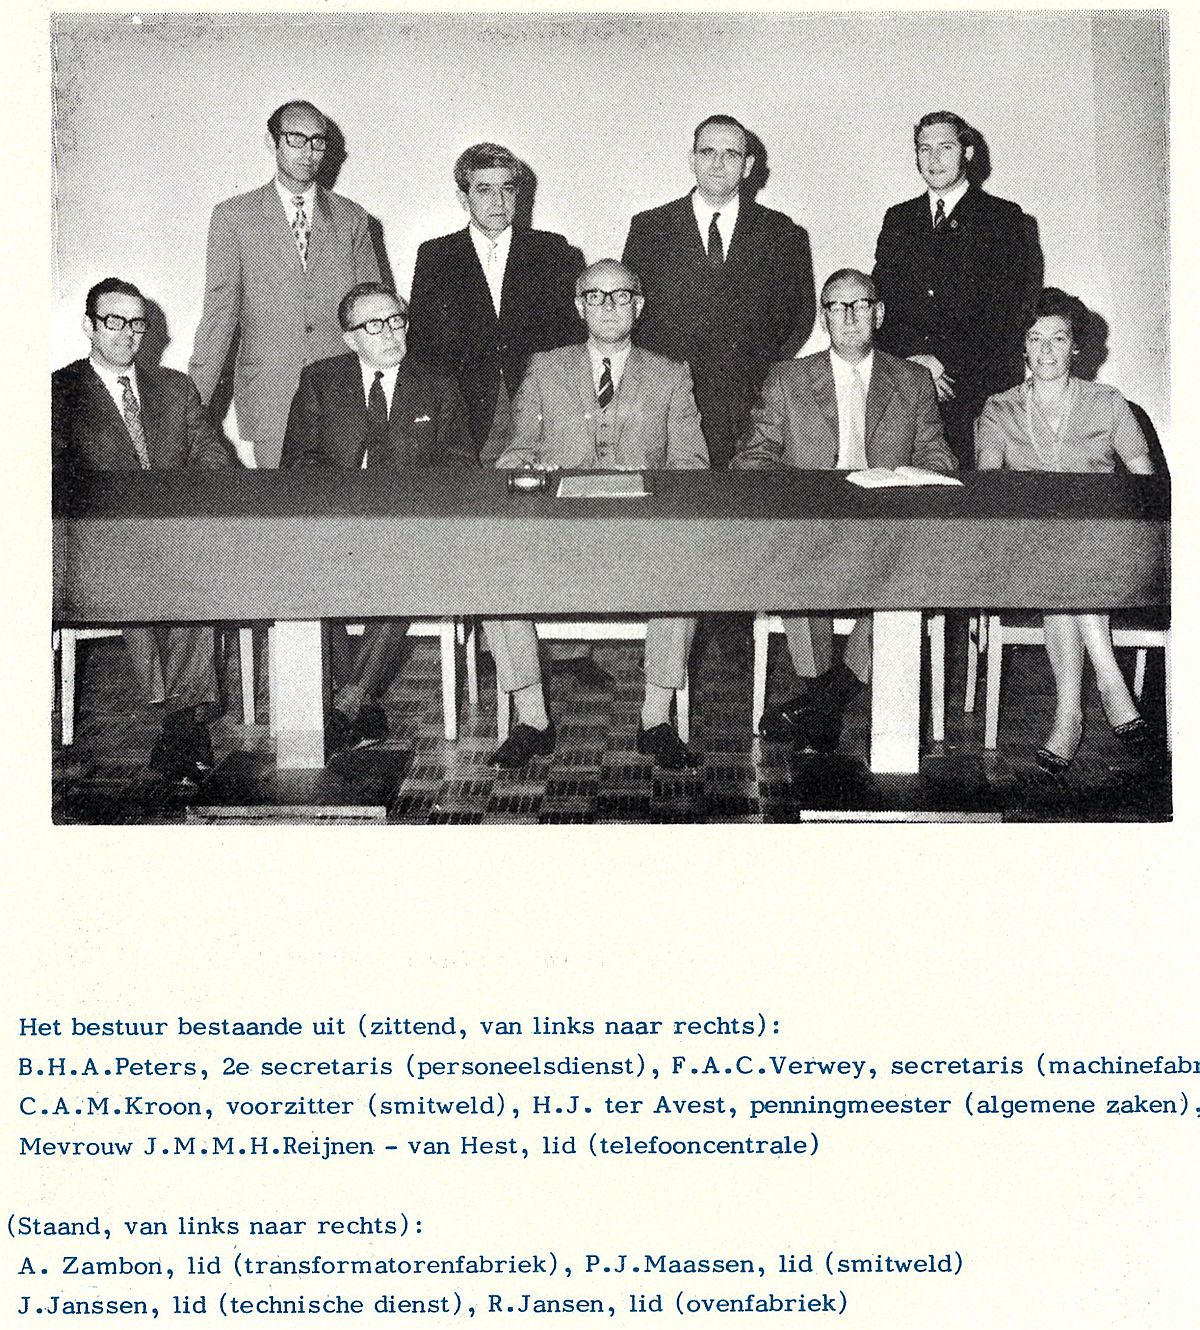 Het bestuur van de PV van Willem Smit in 1971